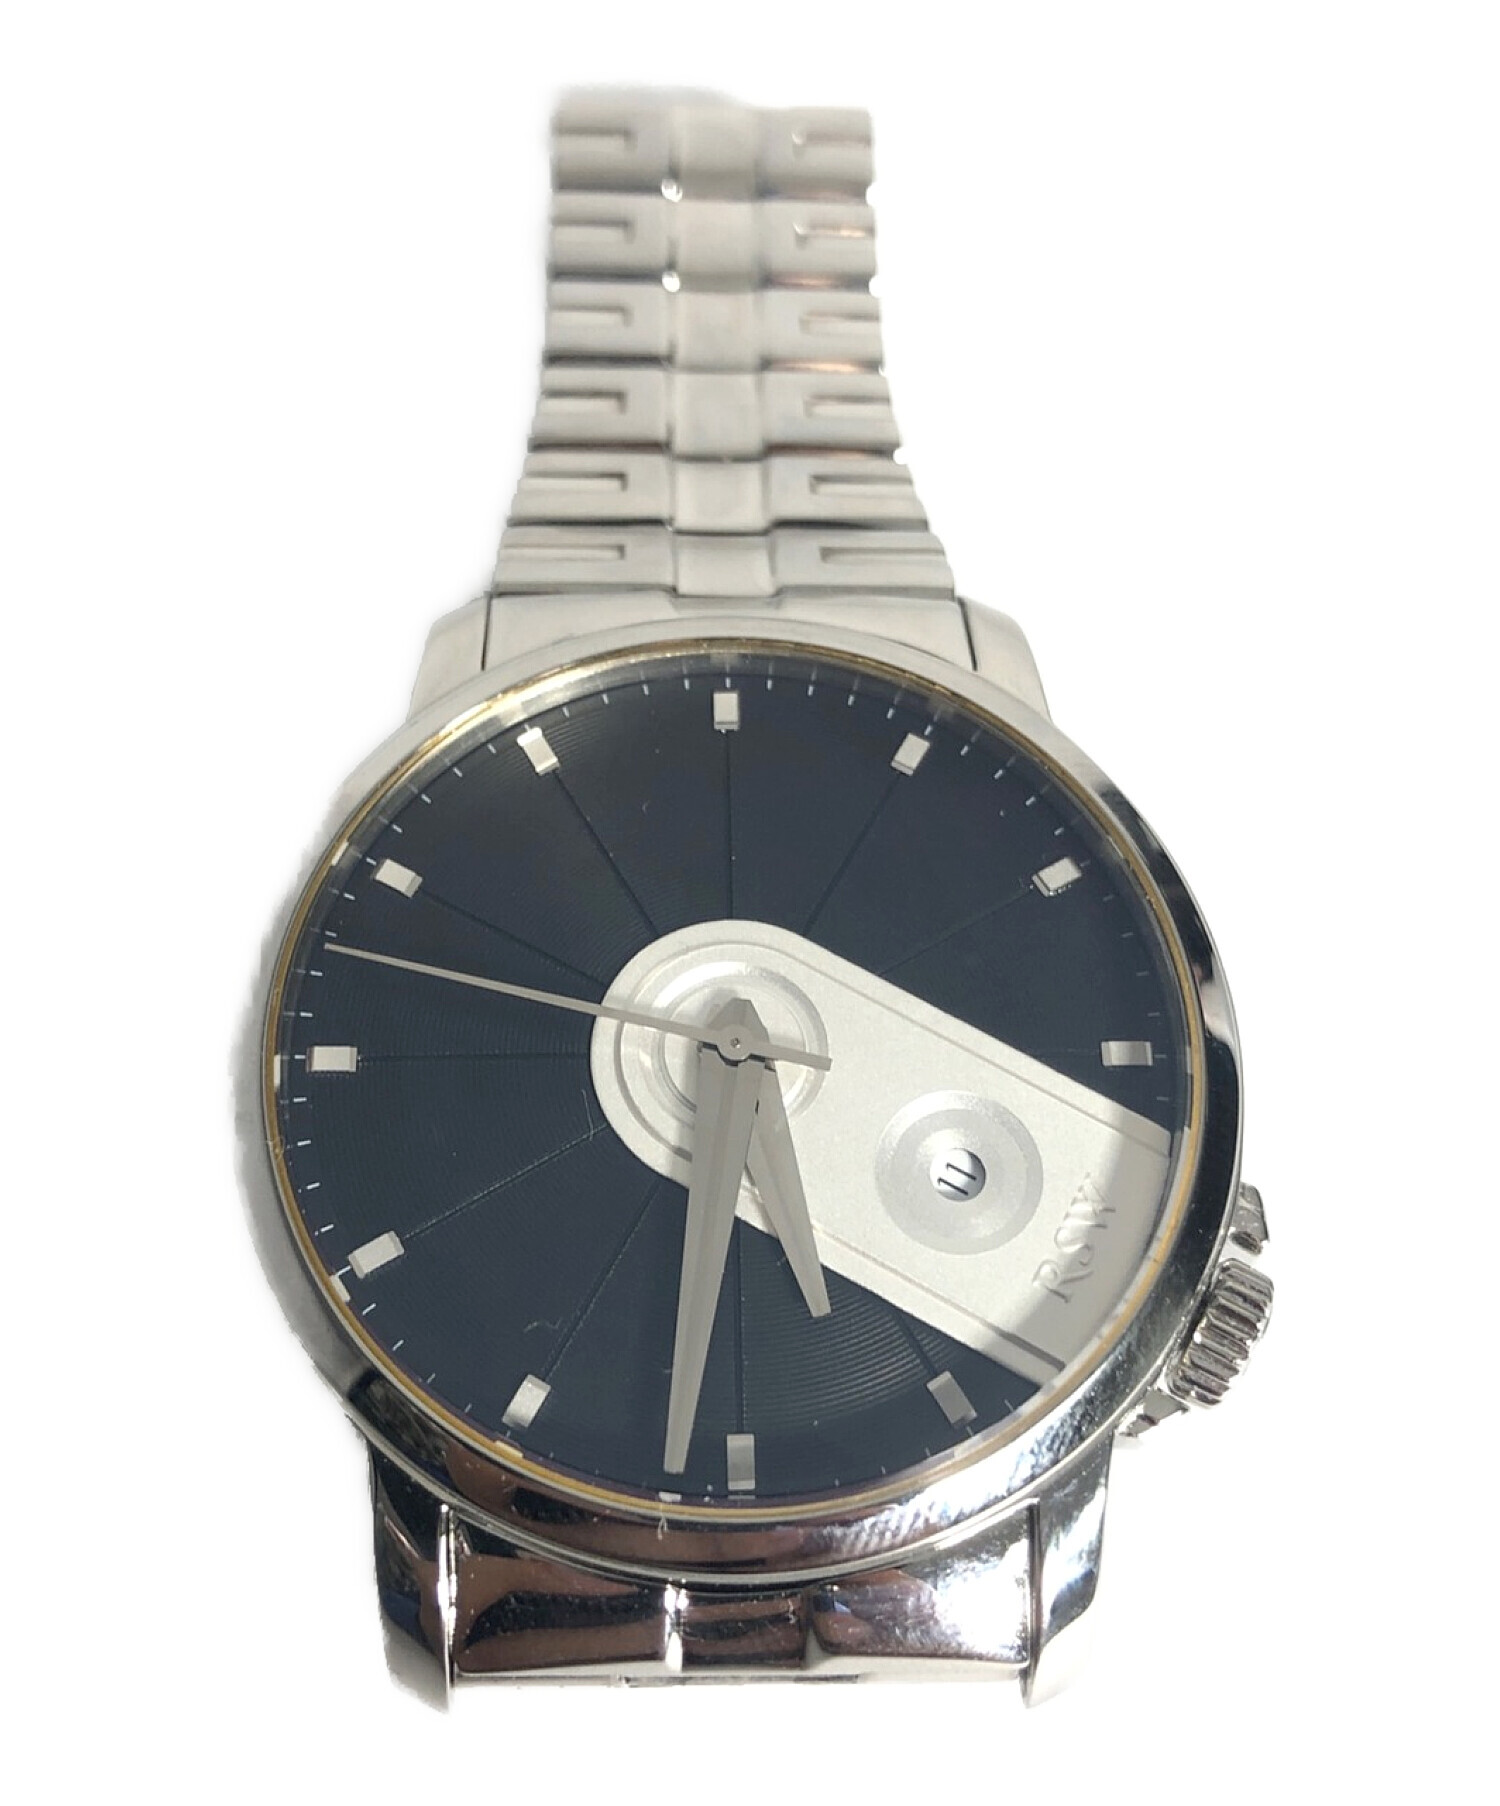 RSW (ラマ スイス ウォッチ) 腕時計 ブラック